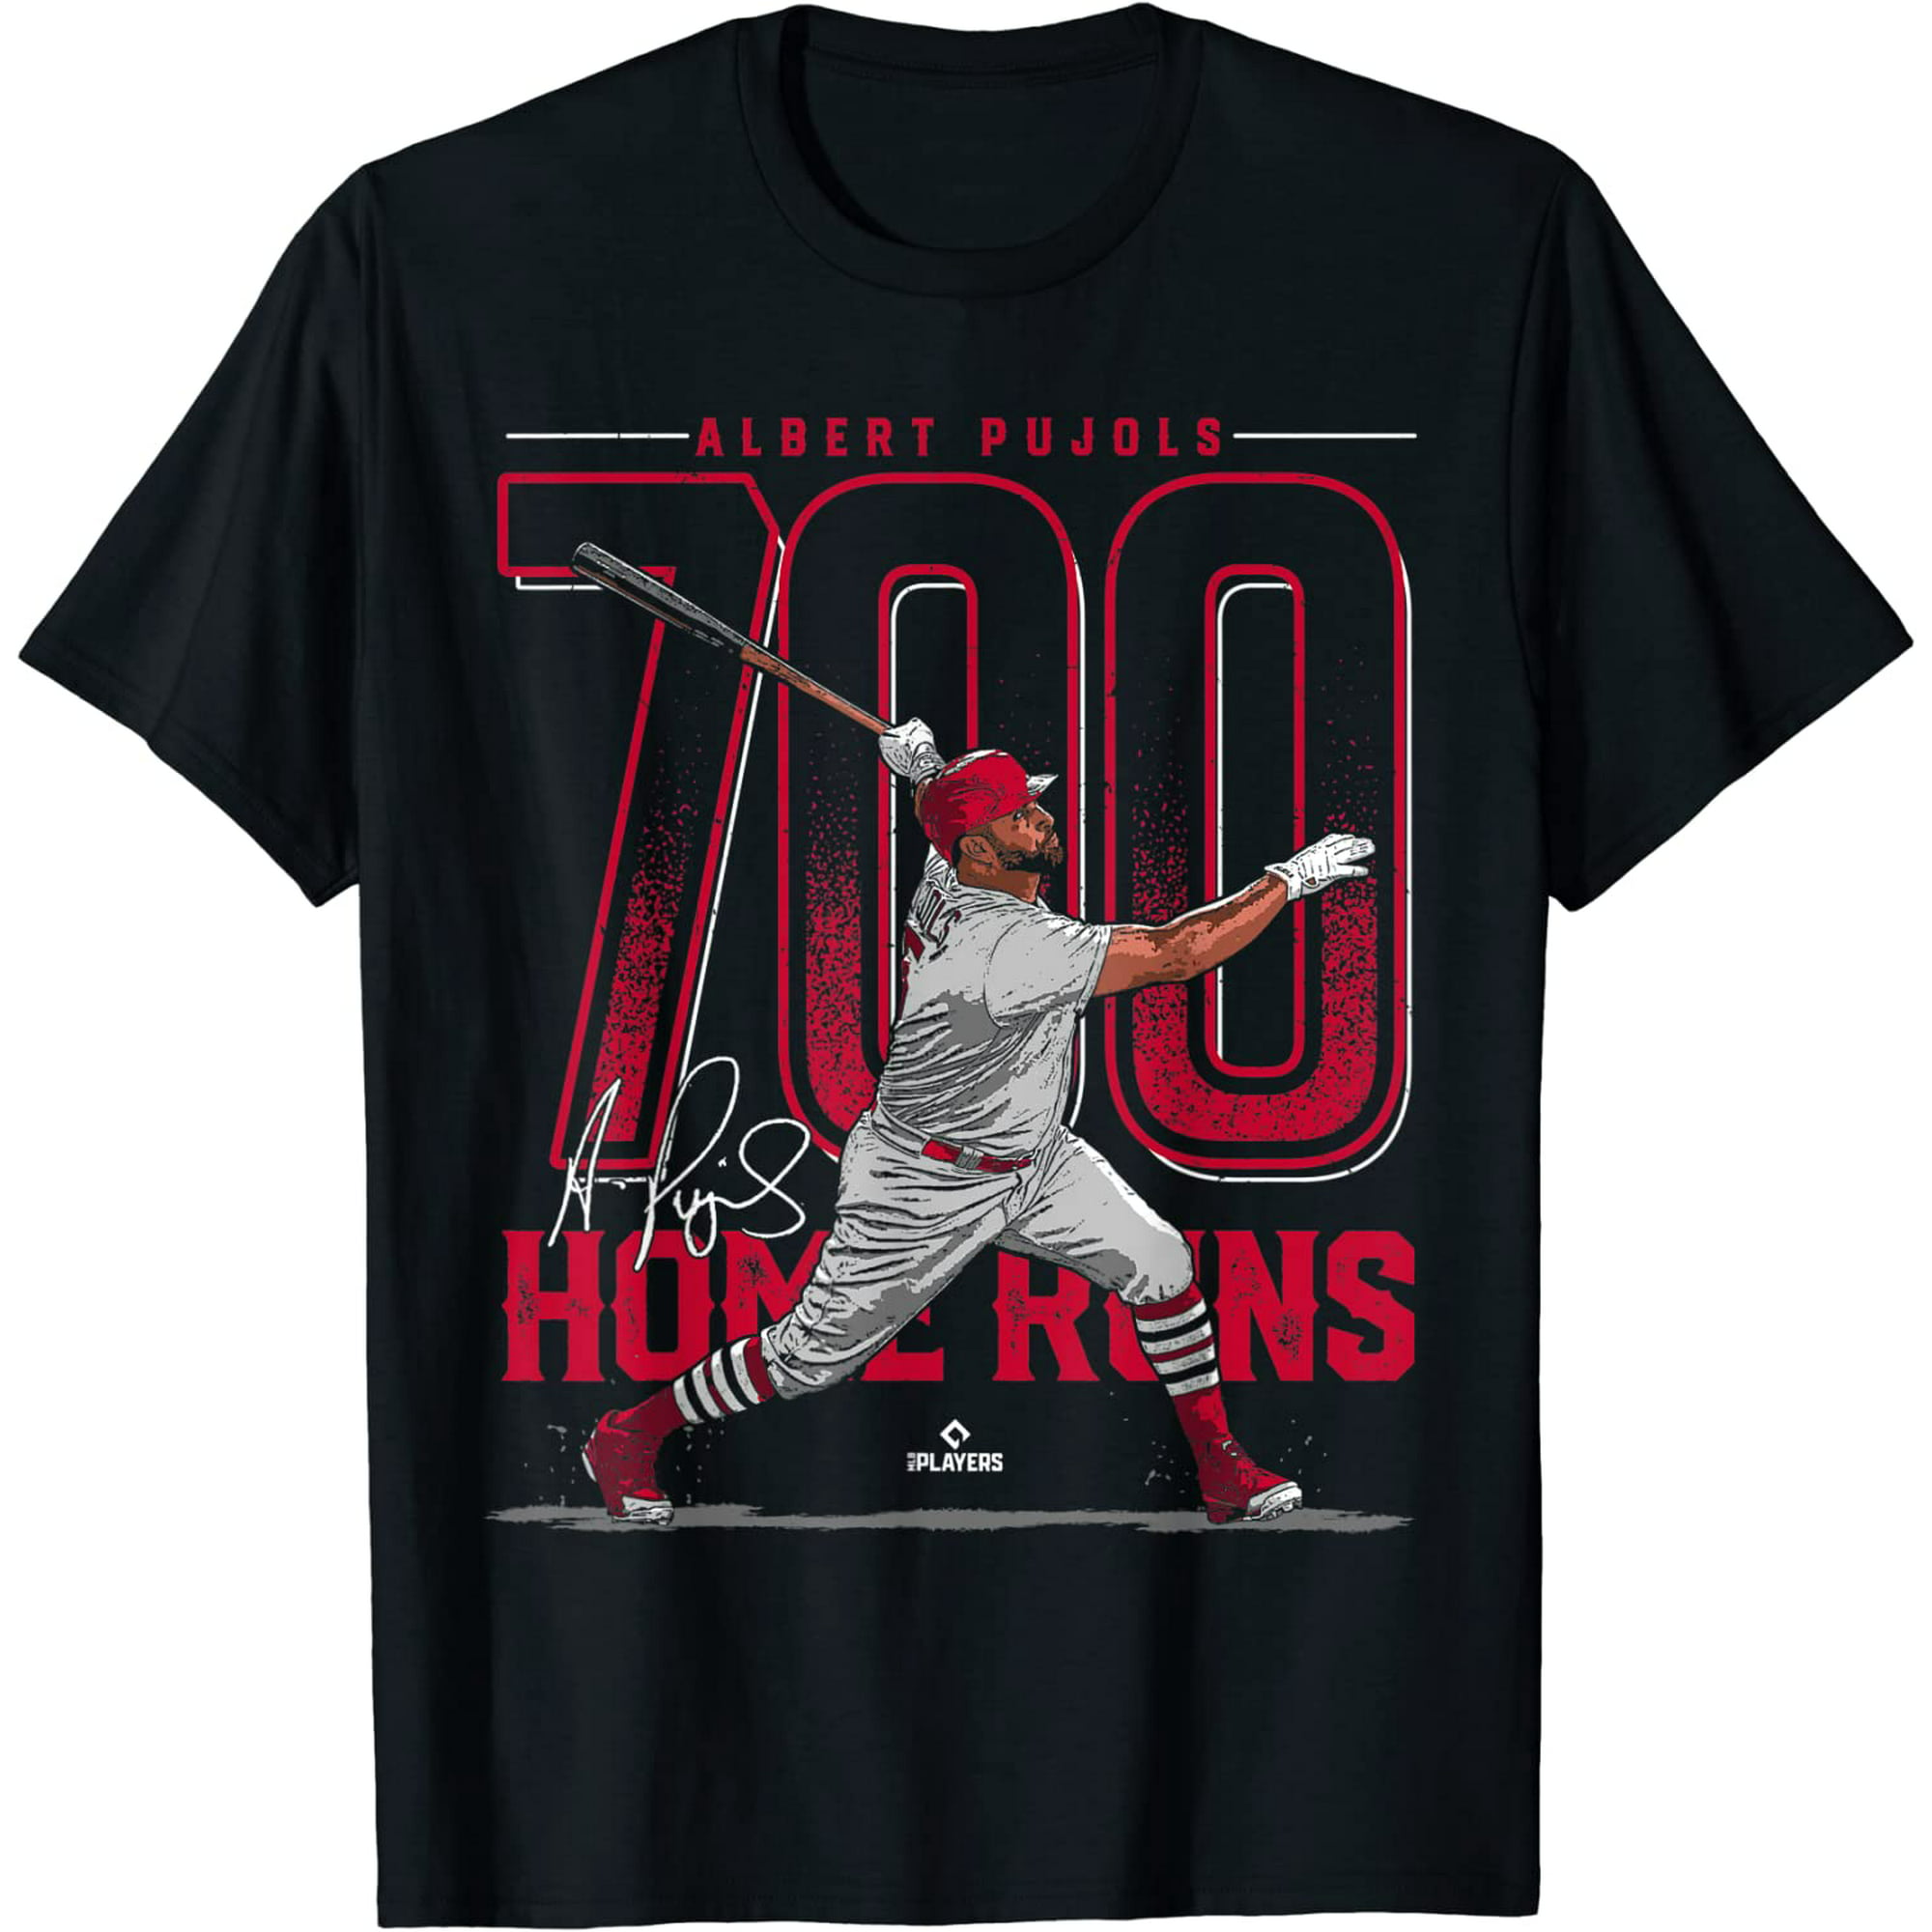 Albert Pujols 700 Home Runs Albert Pujols St Louis Mlbpa Shirt